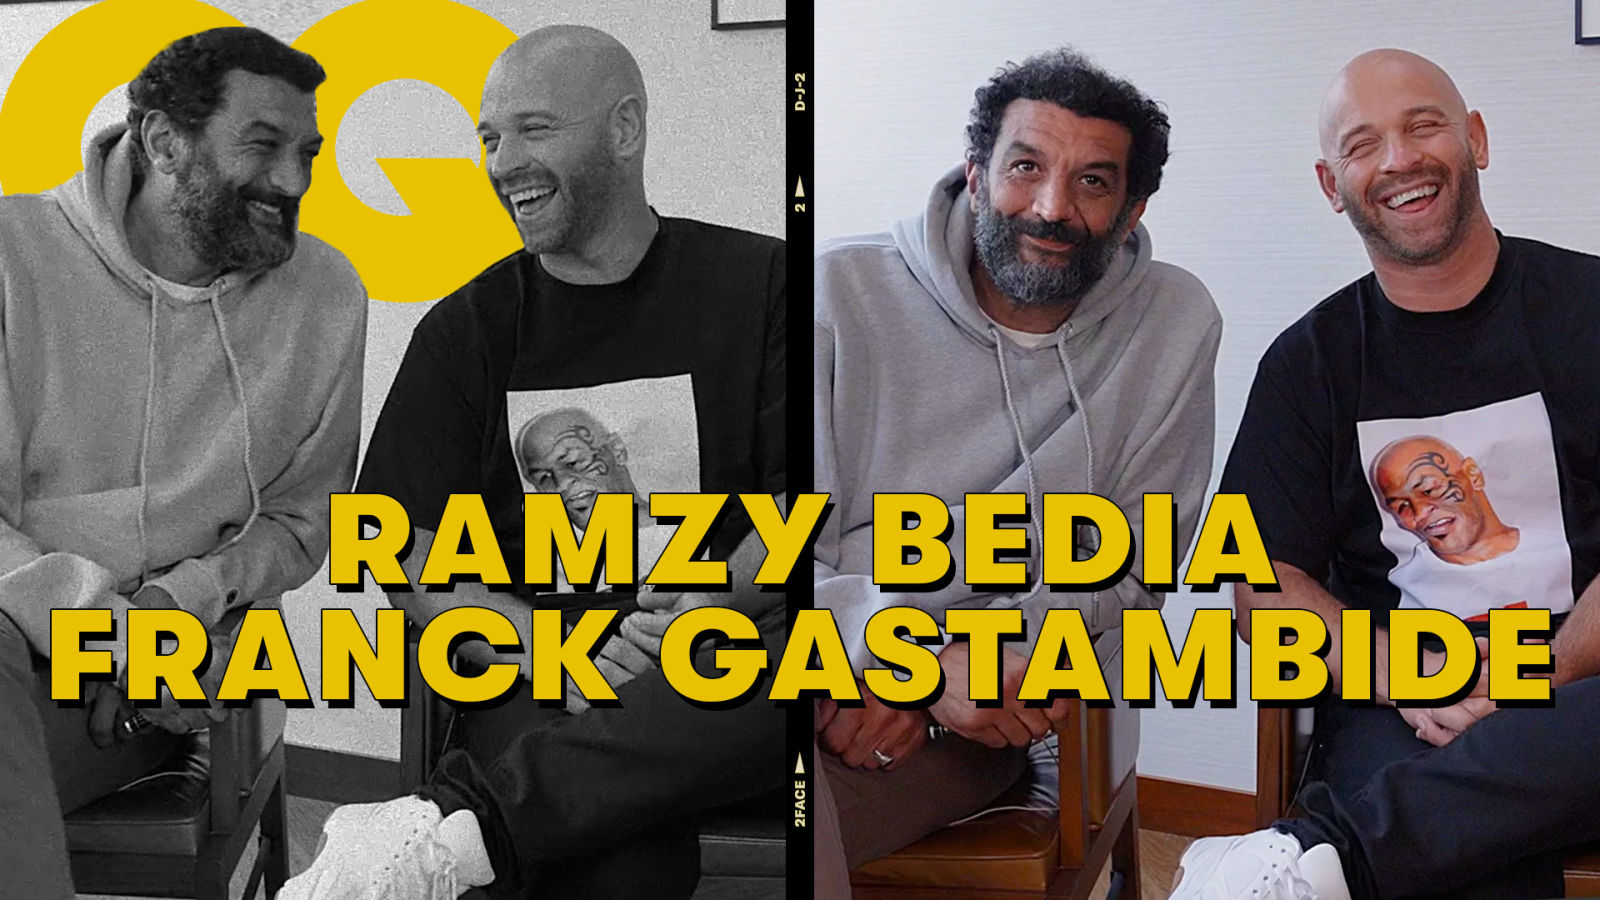 Franck Gastambide, Ramzy Bedia et les personnages de Medellín répondent à l’interview Face 2 Face